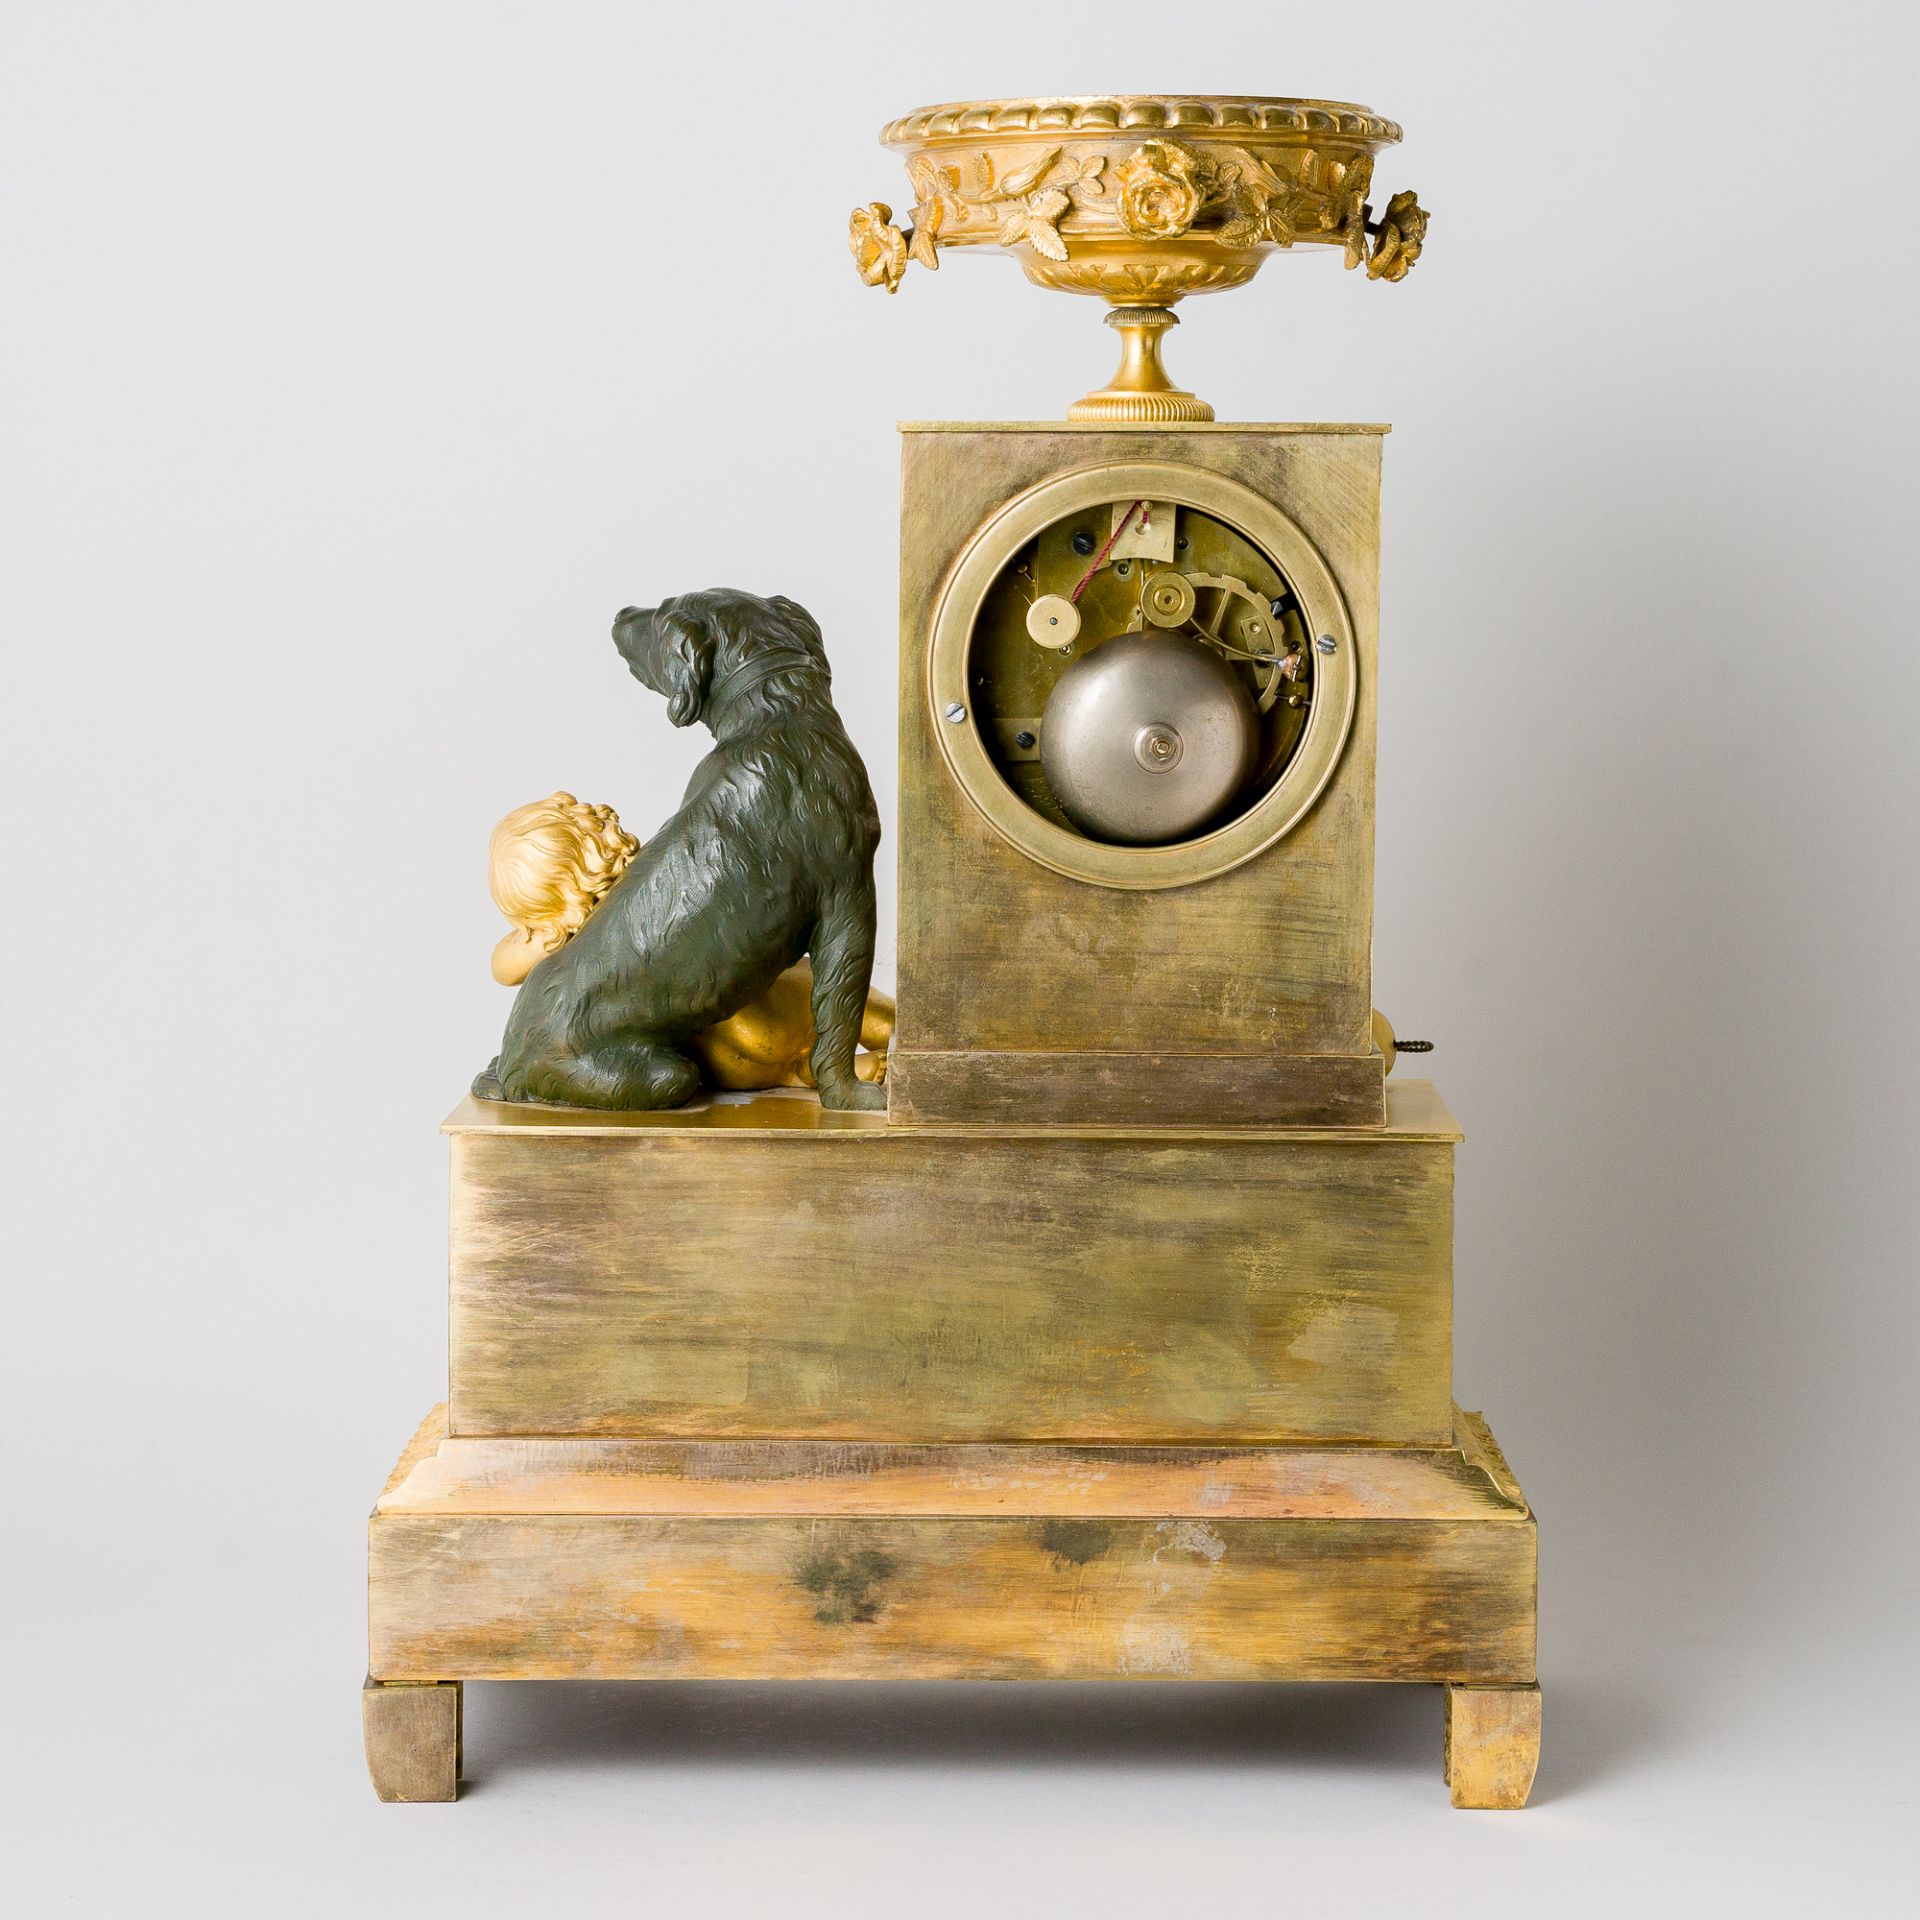 Sehr feine Empire Pendule mit Bronze, Leroux a Paris, Frankreich um 1815 - Bild 4 aus 10